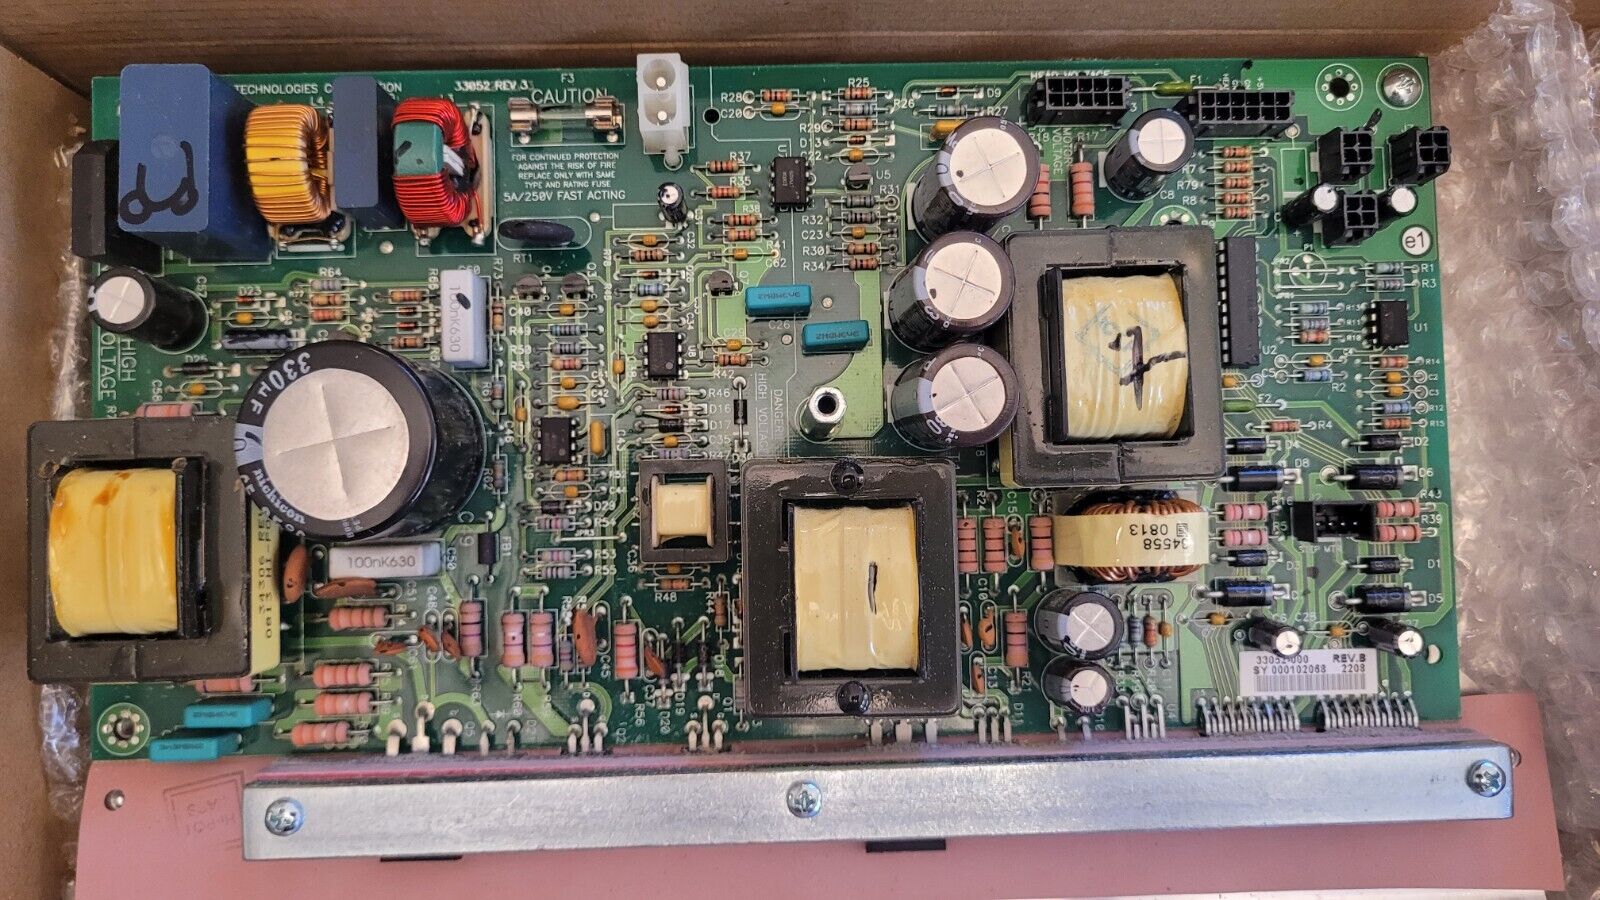 Zebra 33052 REV 3,  Power Supply Board for 105SL Label Printer